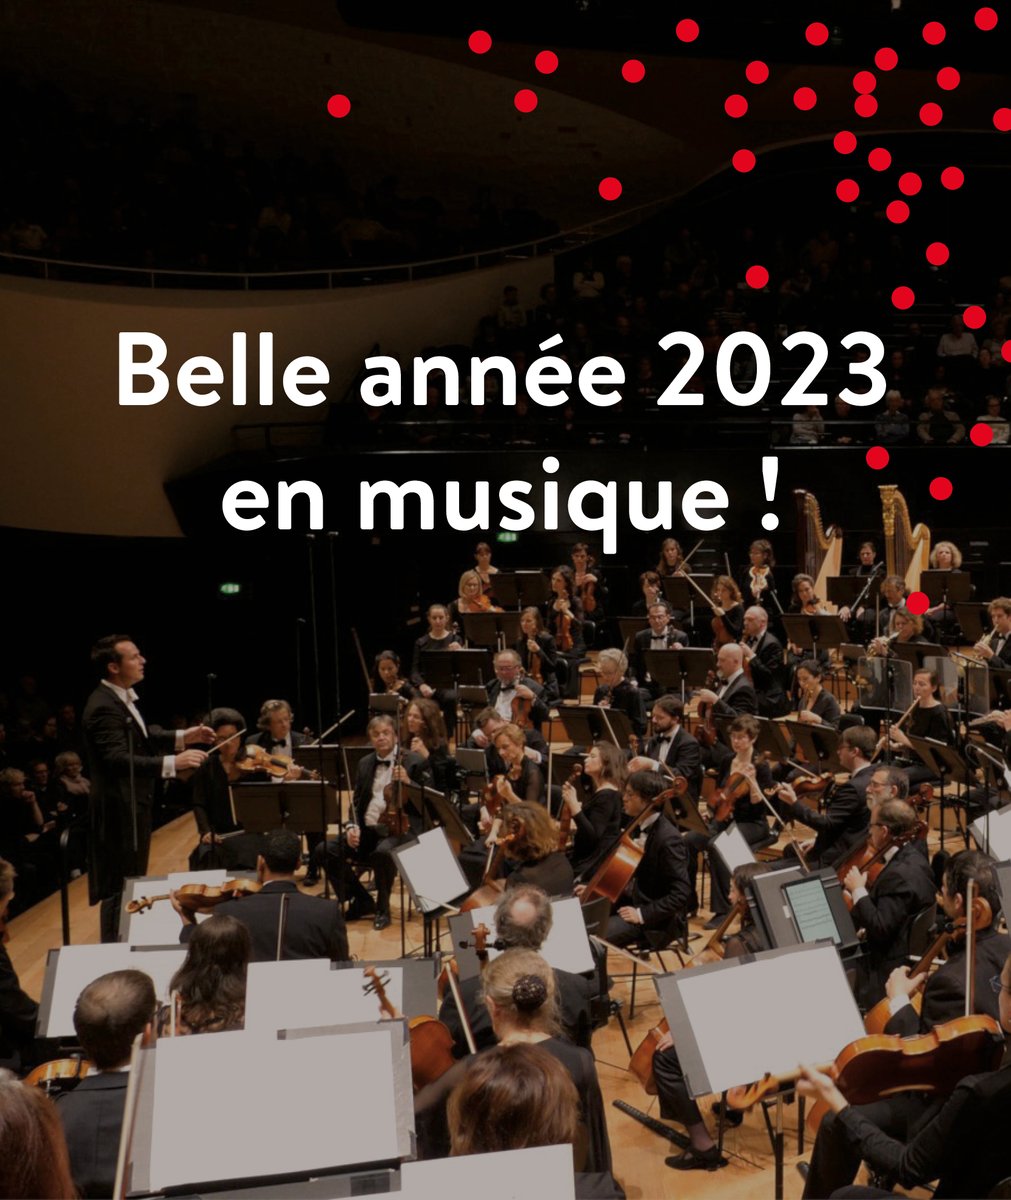 L’Orchestre national d’Île-de-France vous souhaite une très belle année 2023 en musique ! @iledefrance @MinistereCC @FloPortelli @CaseScaglione